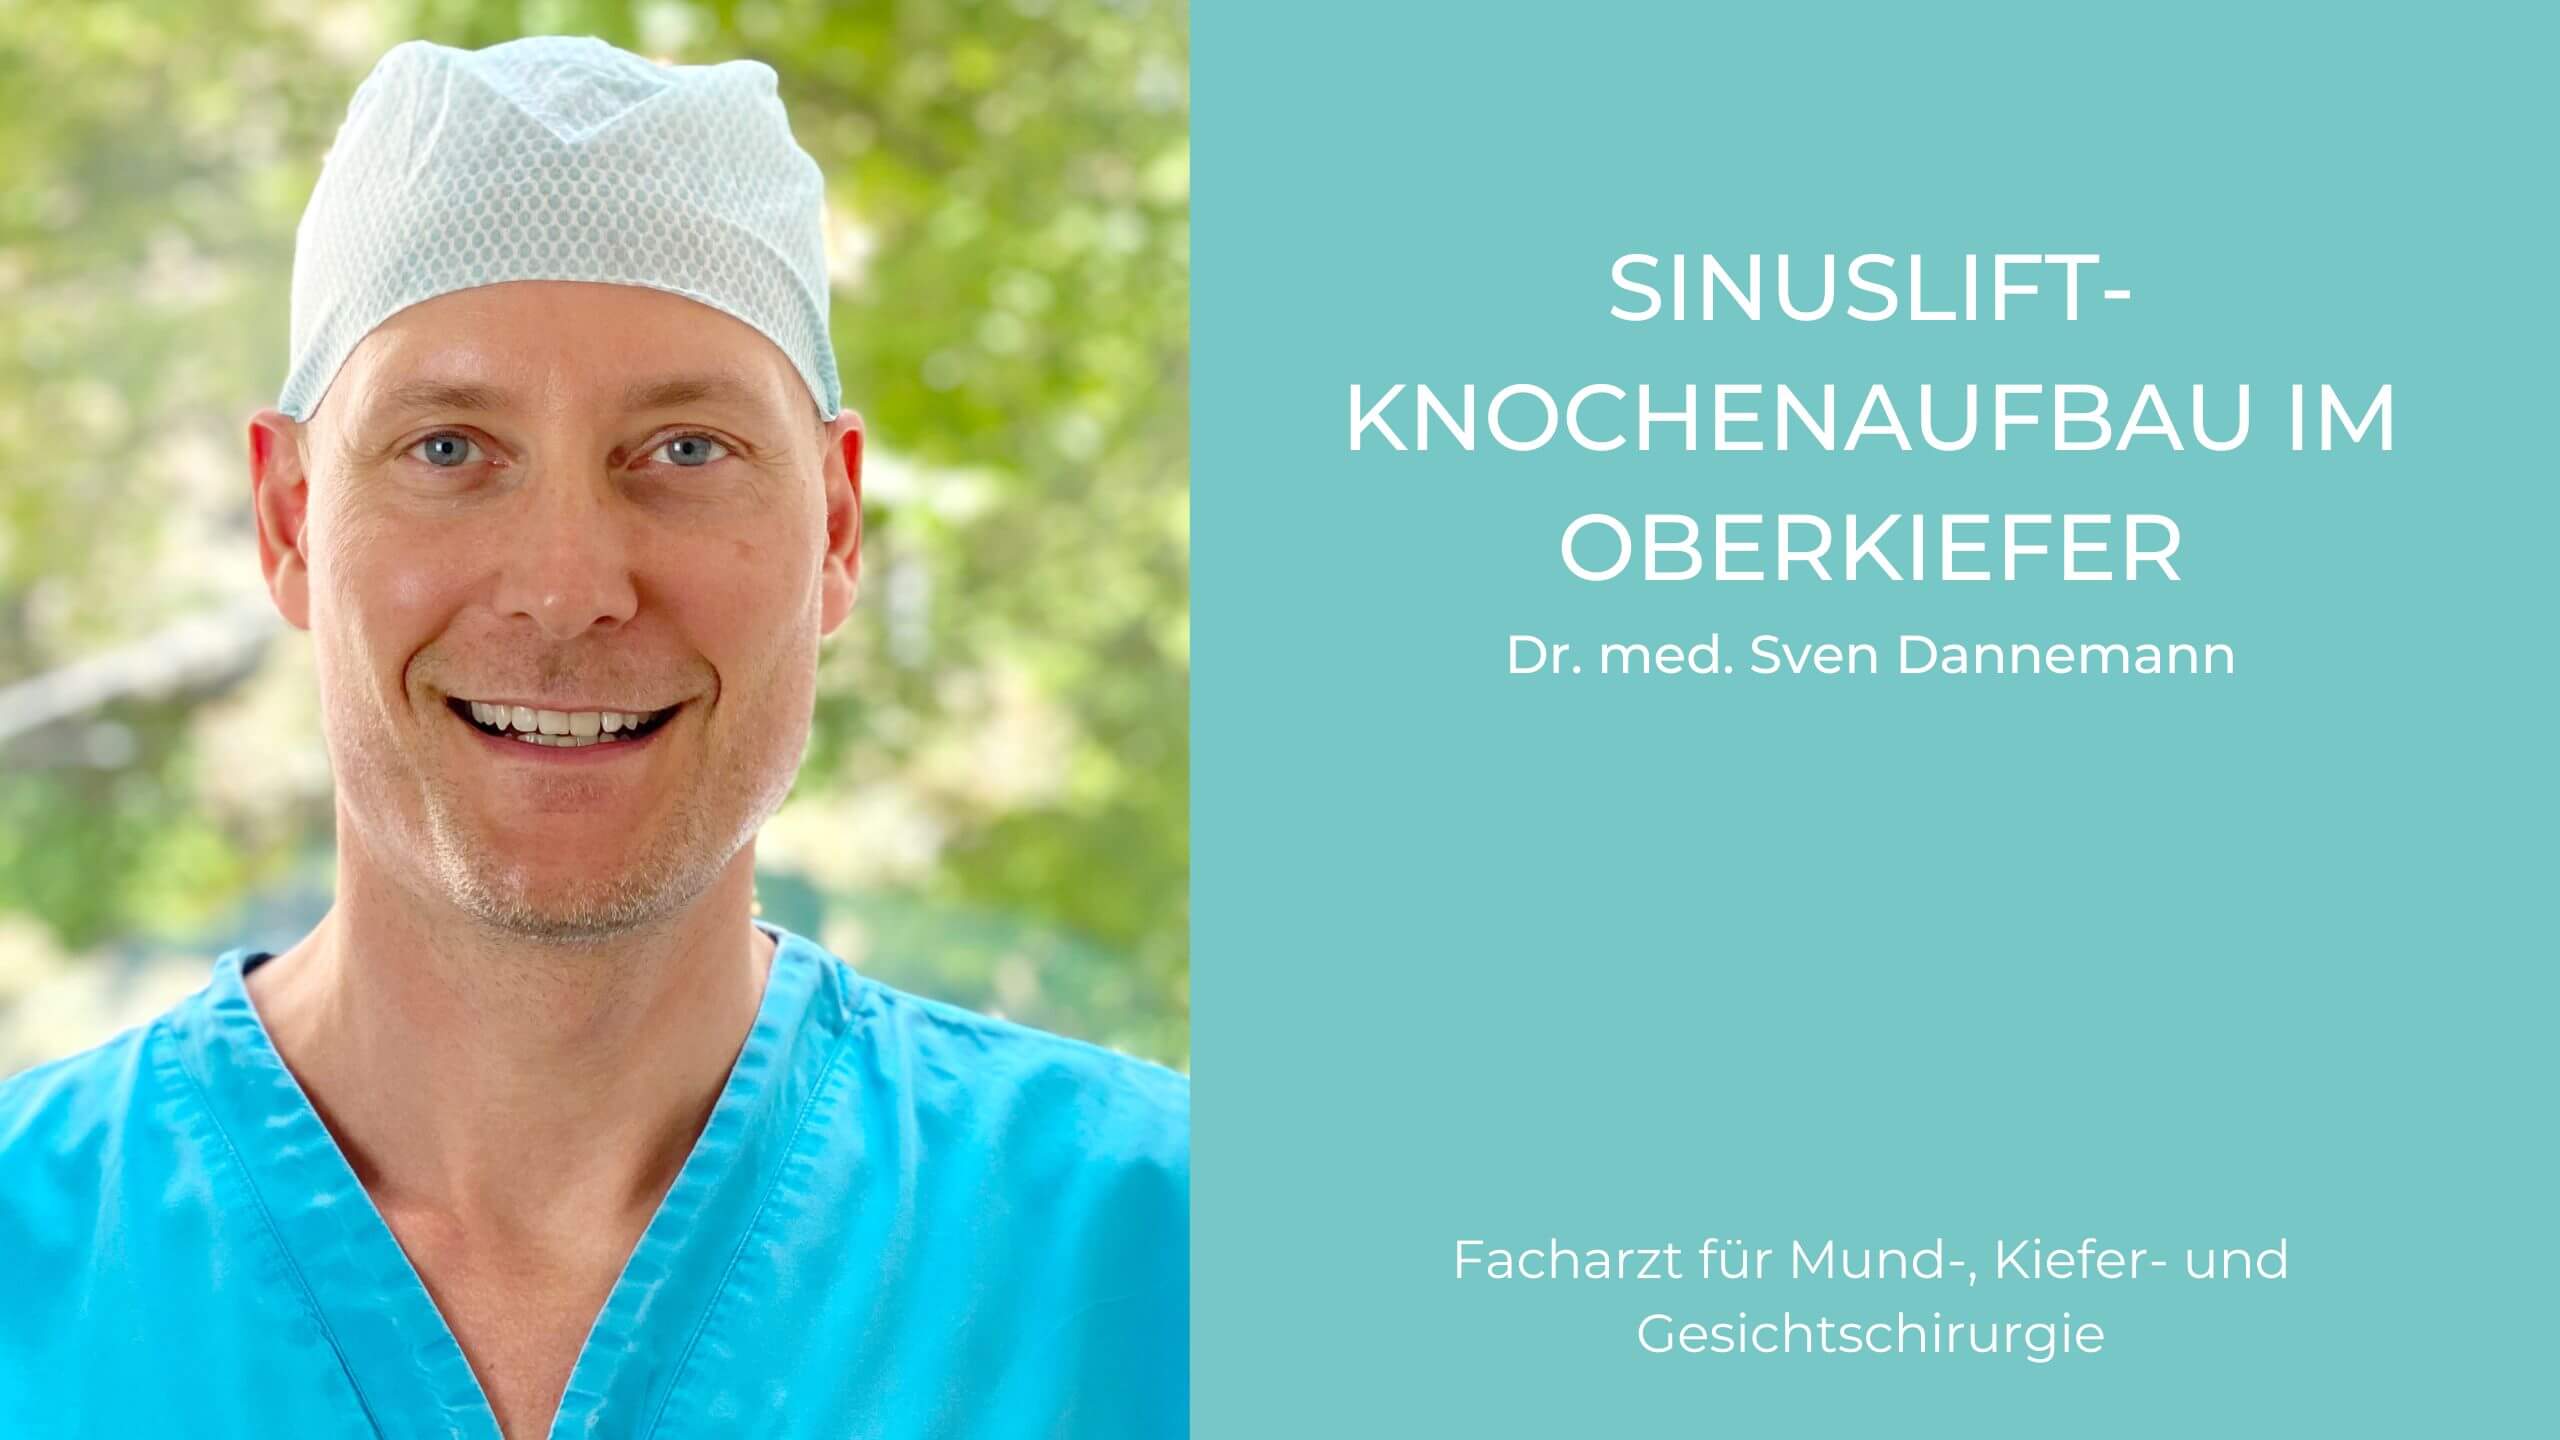 Video Sinuslift, Mund-Kiefer-Gesichtschirurgie (MKG) in München, Dr. Dannemann